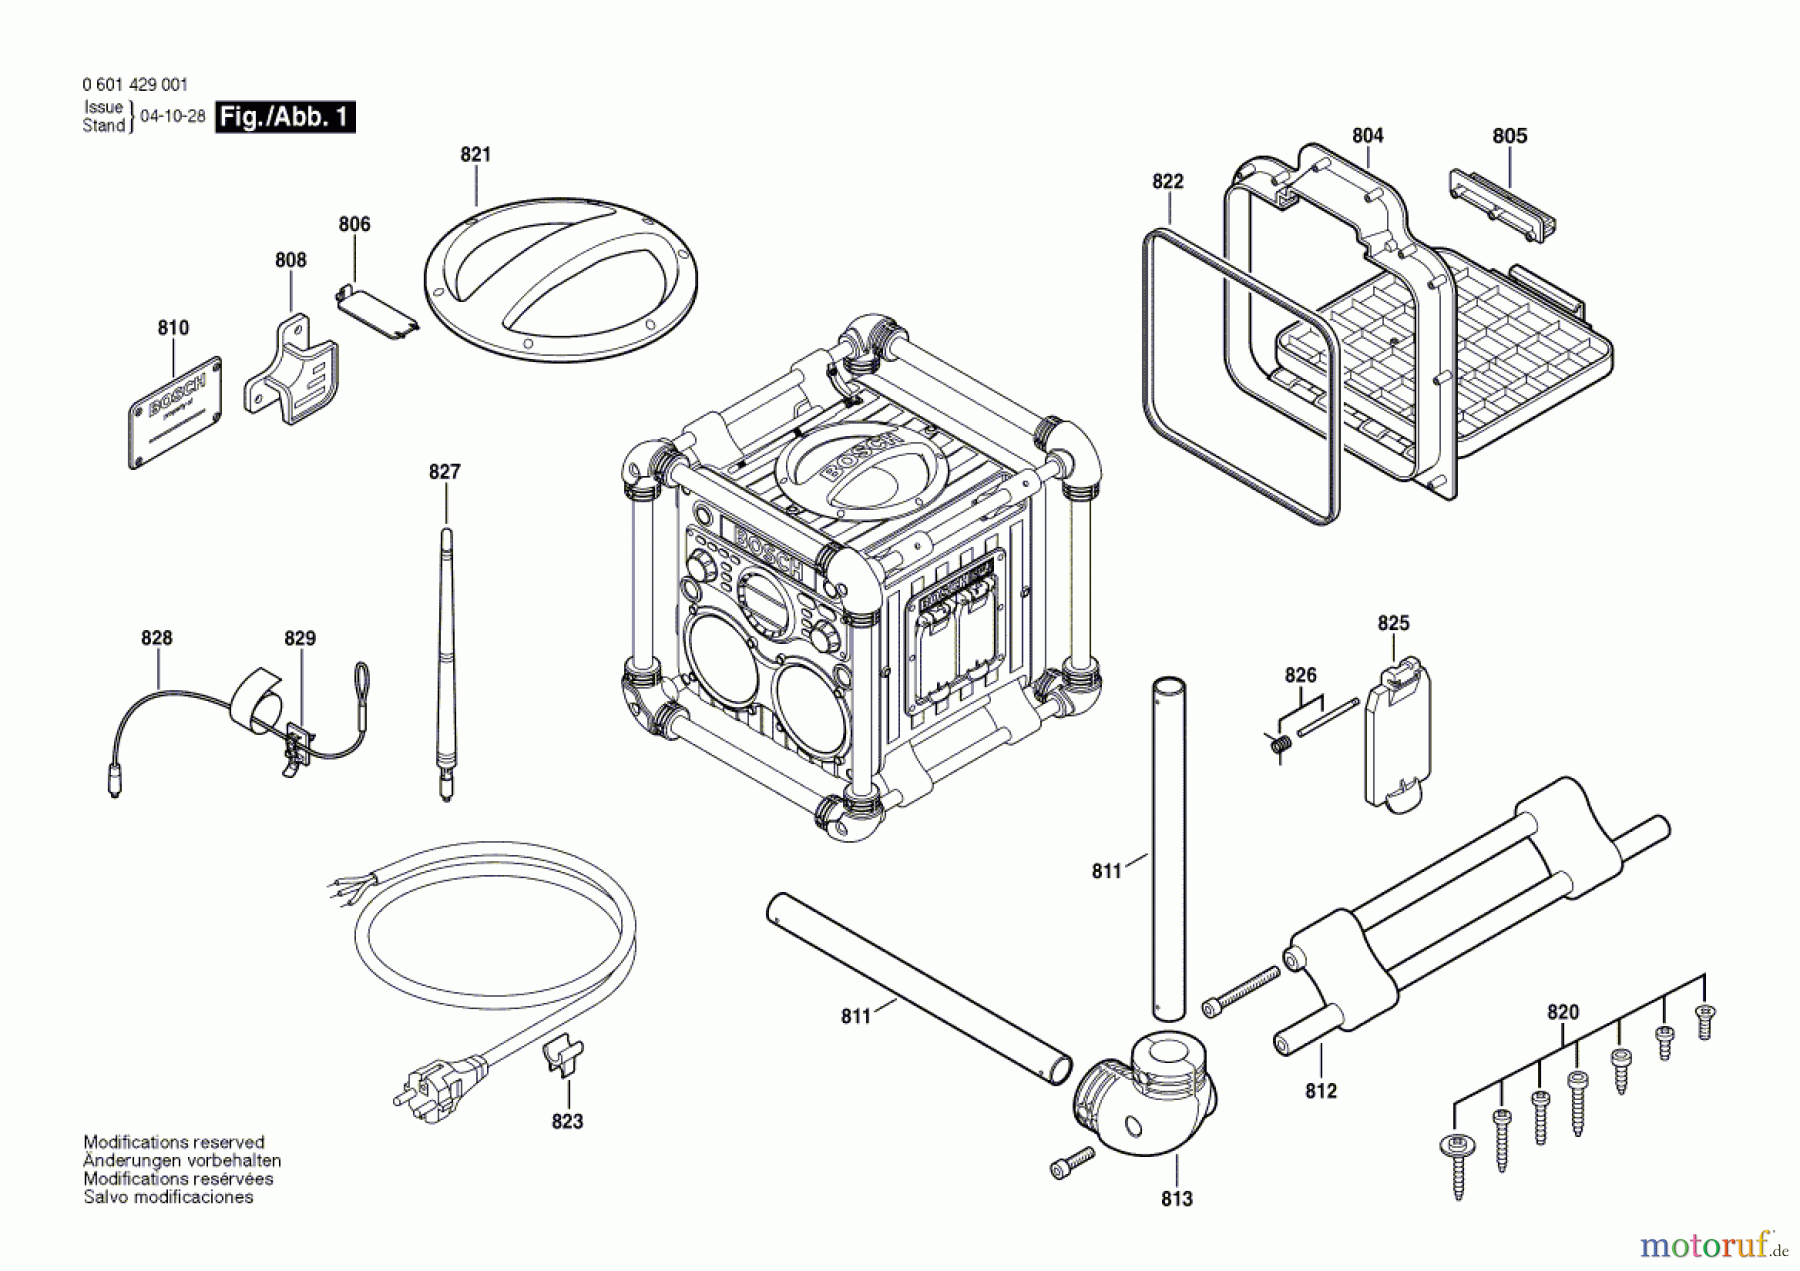  Bosch Werkzeug Radiobox GML 24 V-CD Seite 1